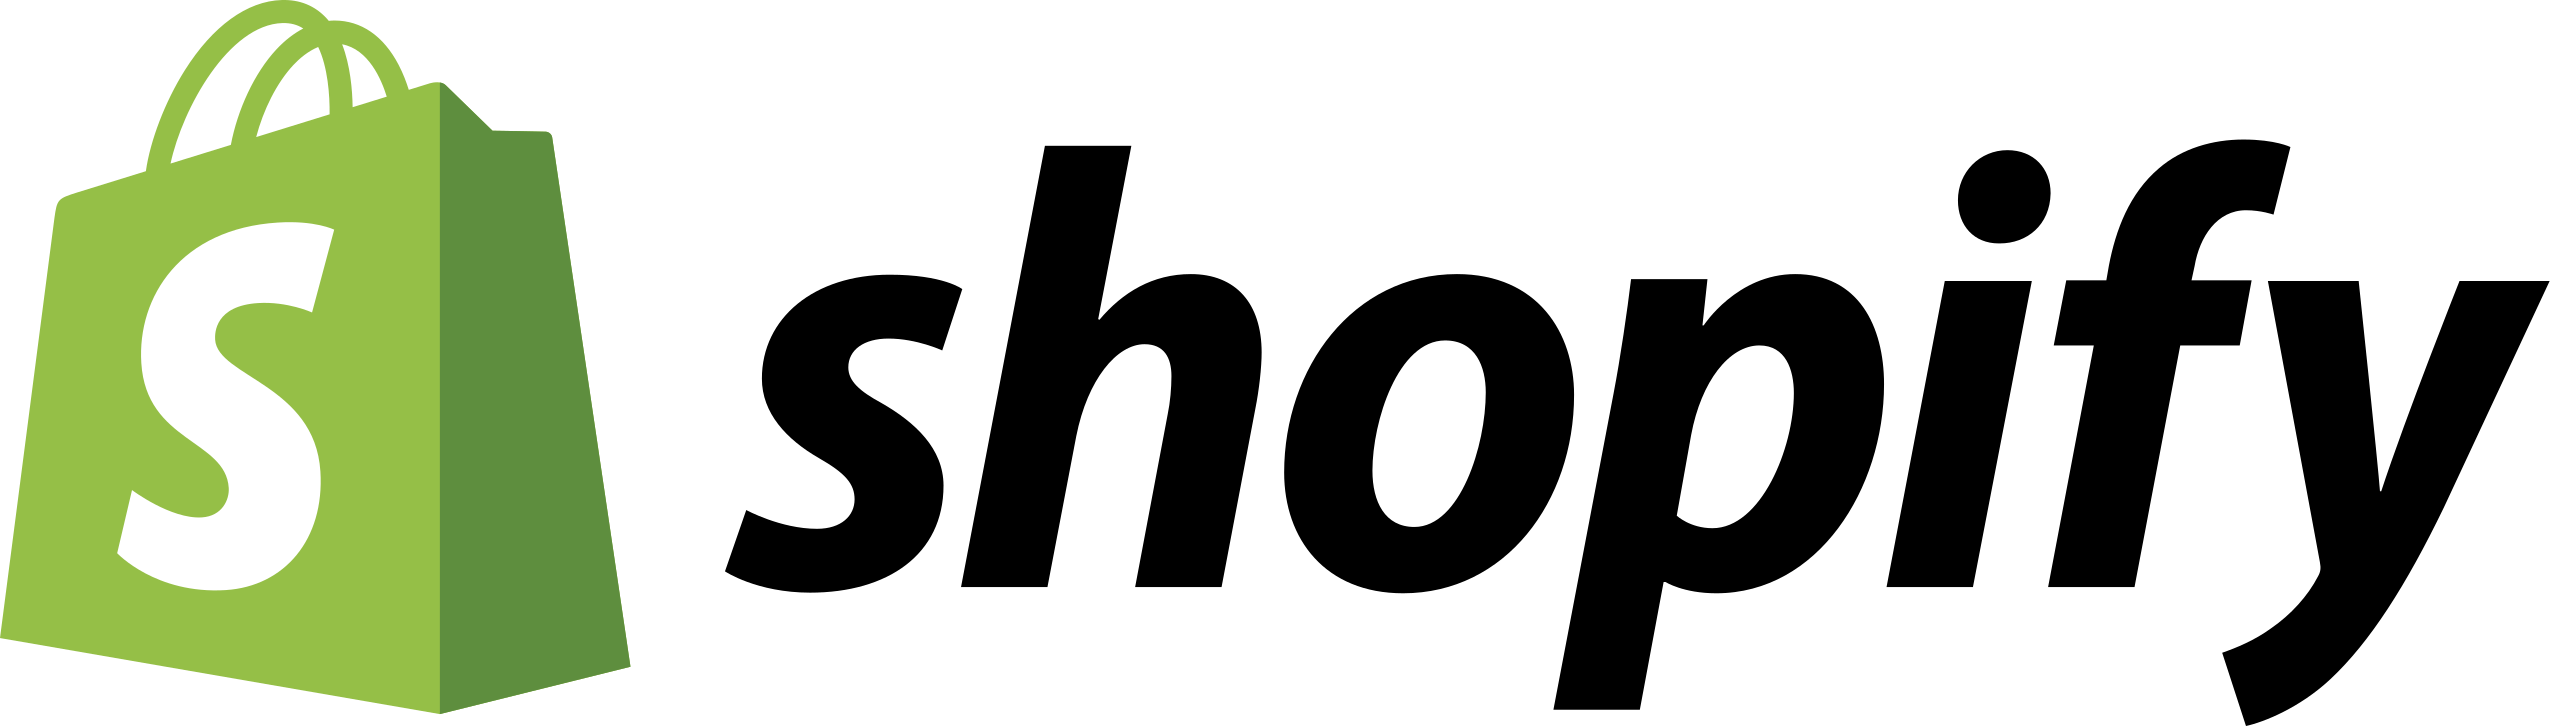 Shopify logo 2018 svg